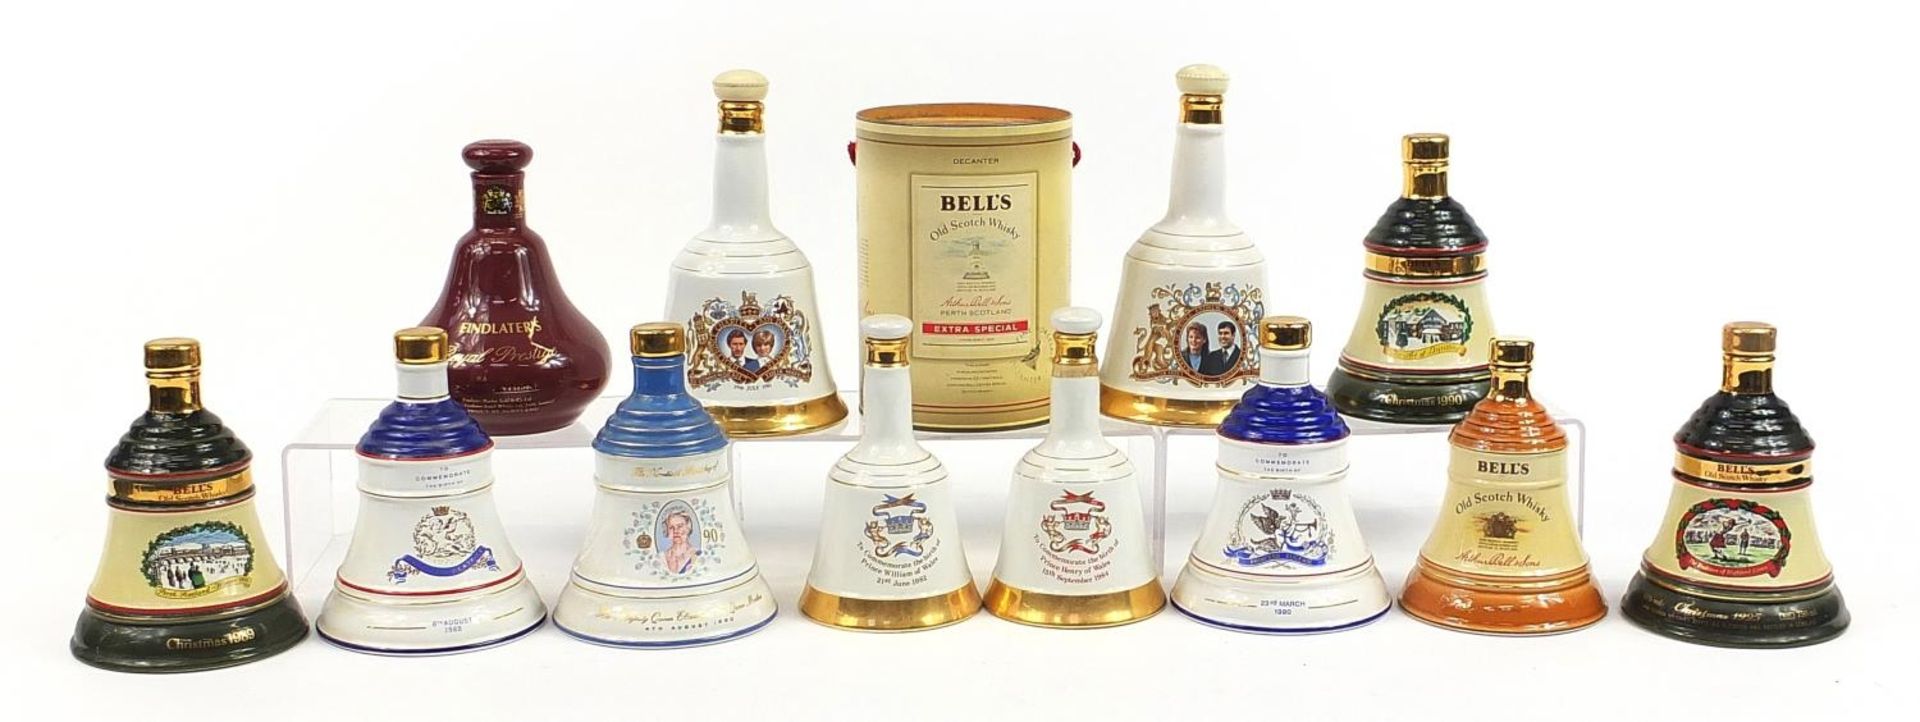 Twelve empty Bells whisky commemorative Wade decanters